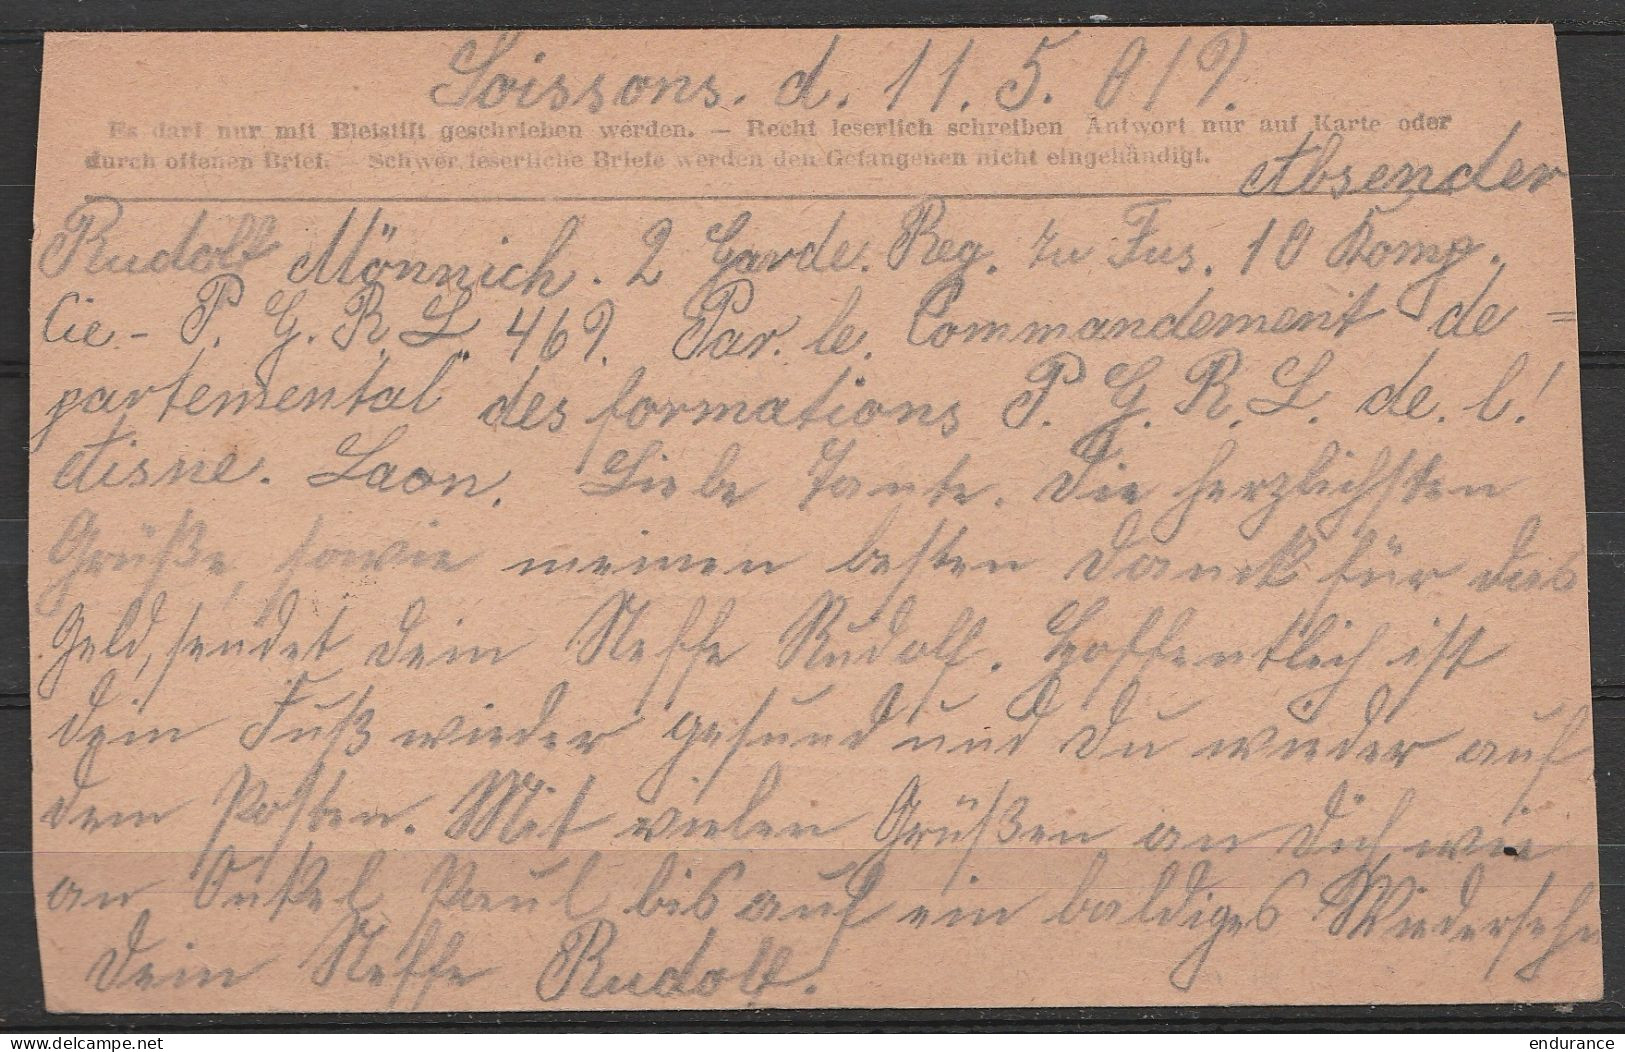 France - CP Franchise Prisonniers De Guerre Càd "BUREAU De RENSEIGNEMENTS /17-5-1919 D'un Prisonnier Allemand à SOISSONS - Lettres & Documents